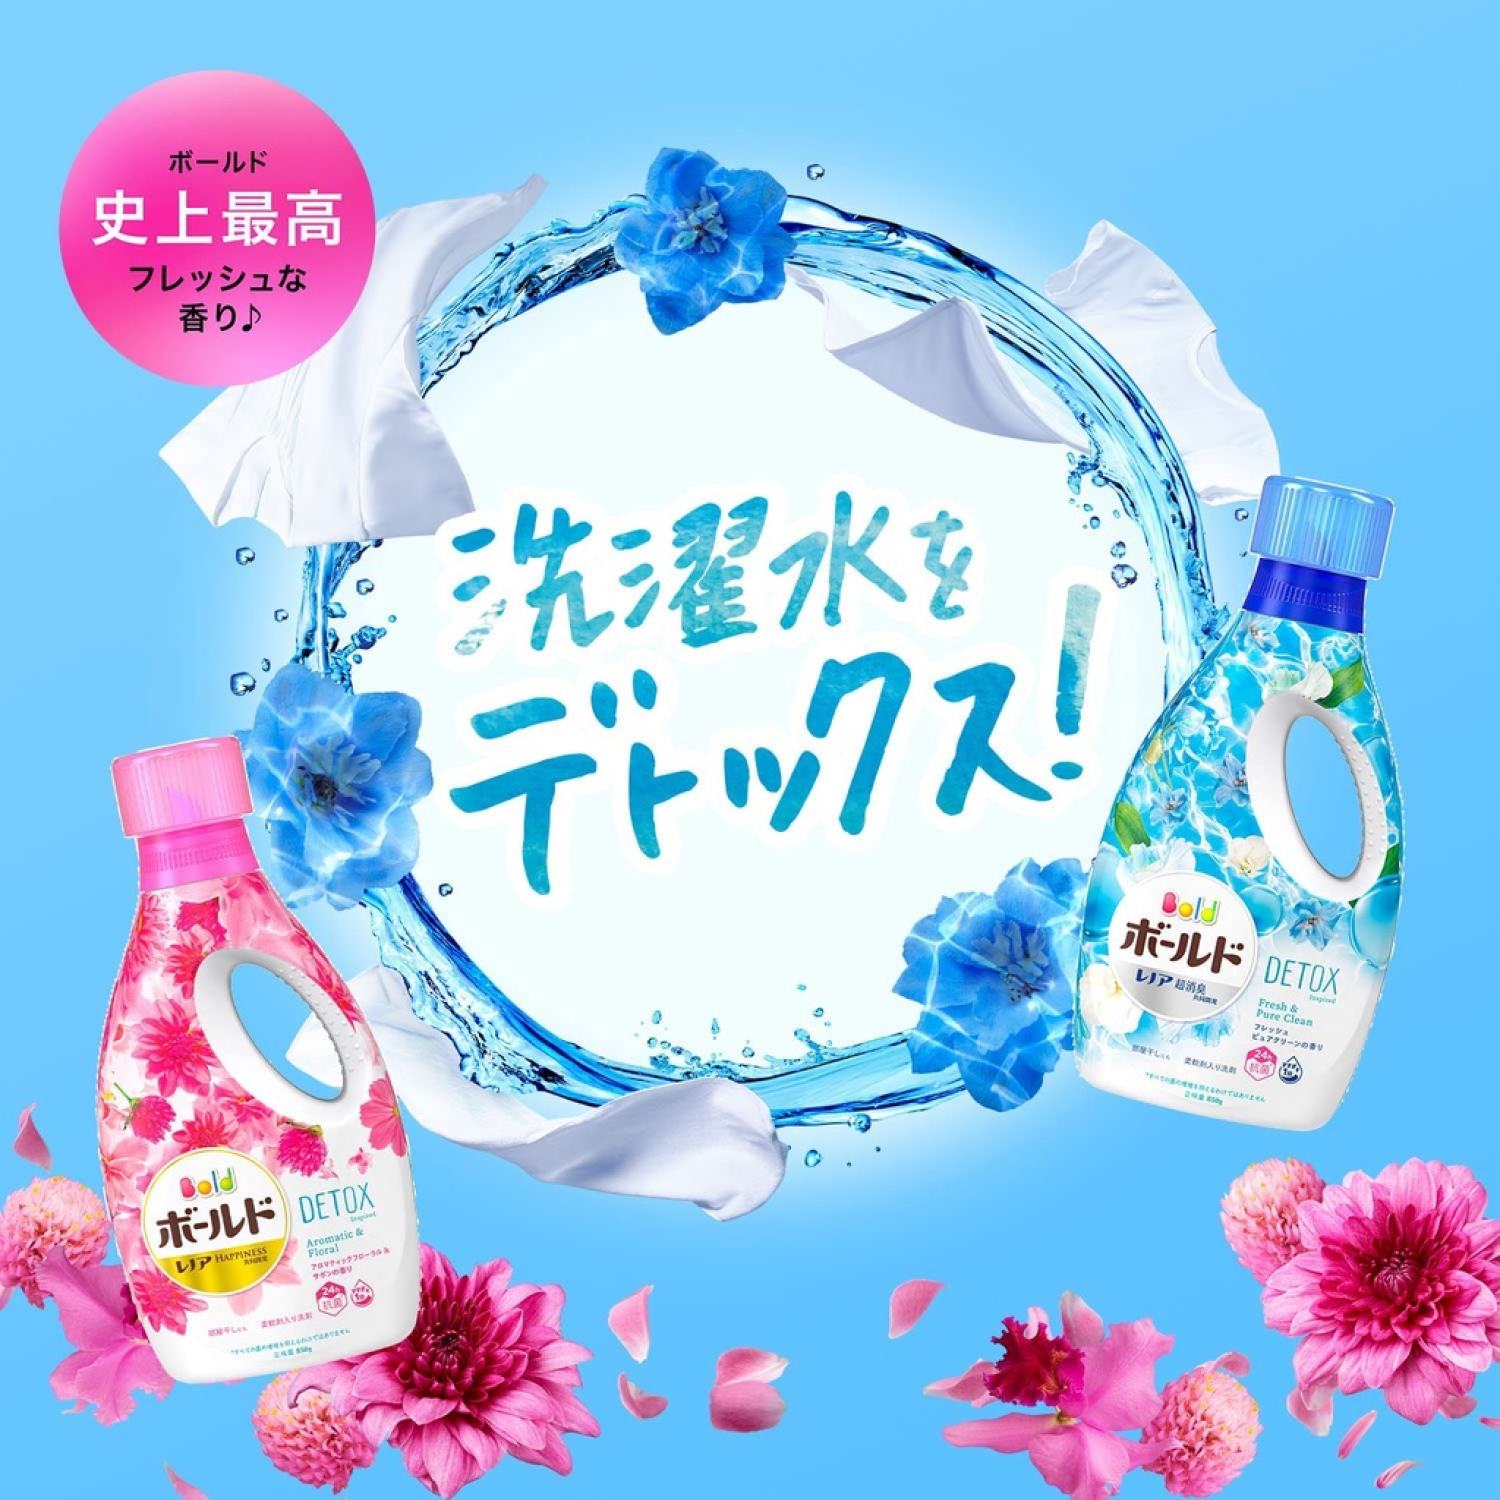 Nước giặt Bold Nhật Bản chai 850g